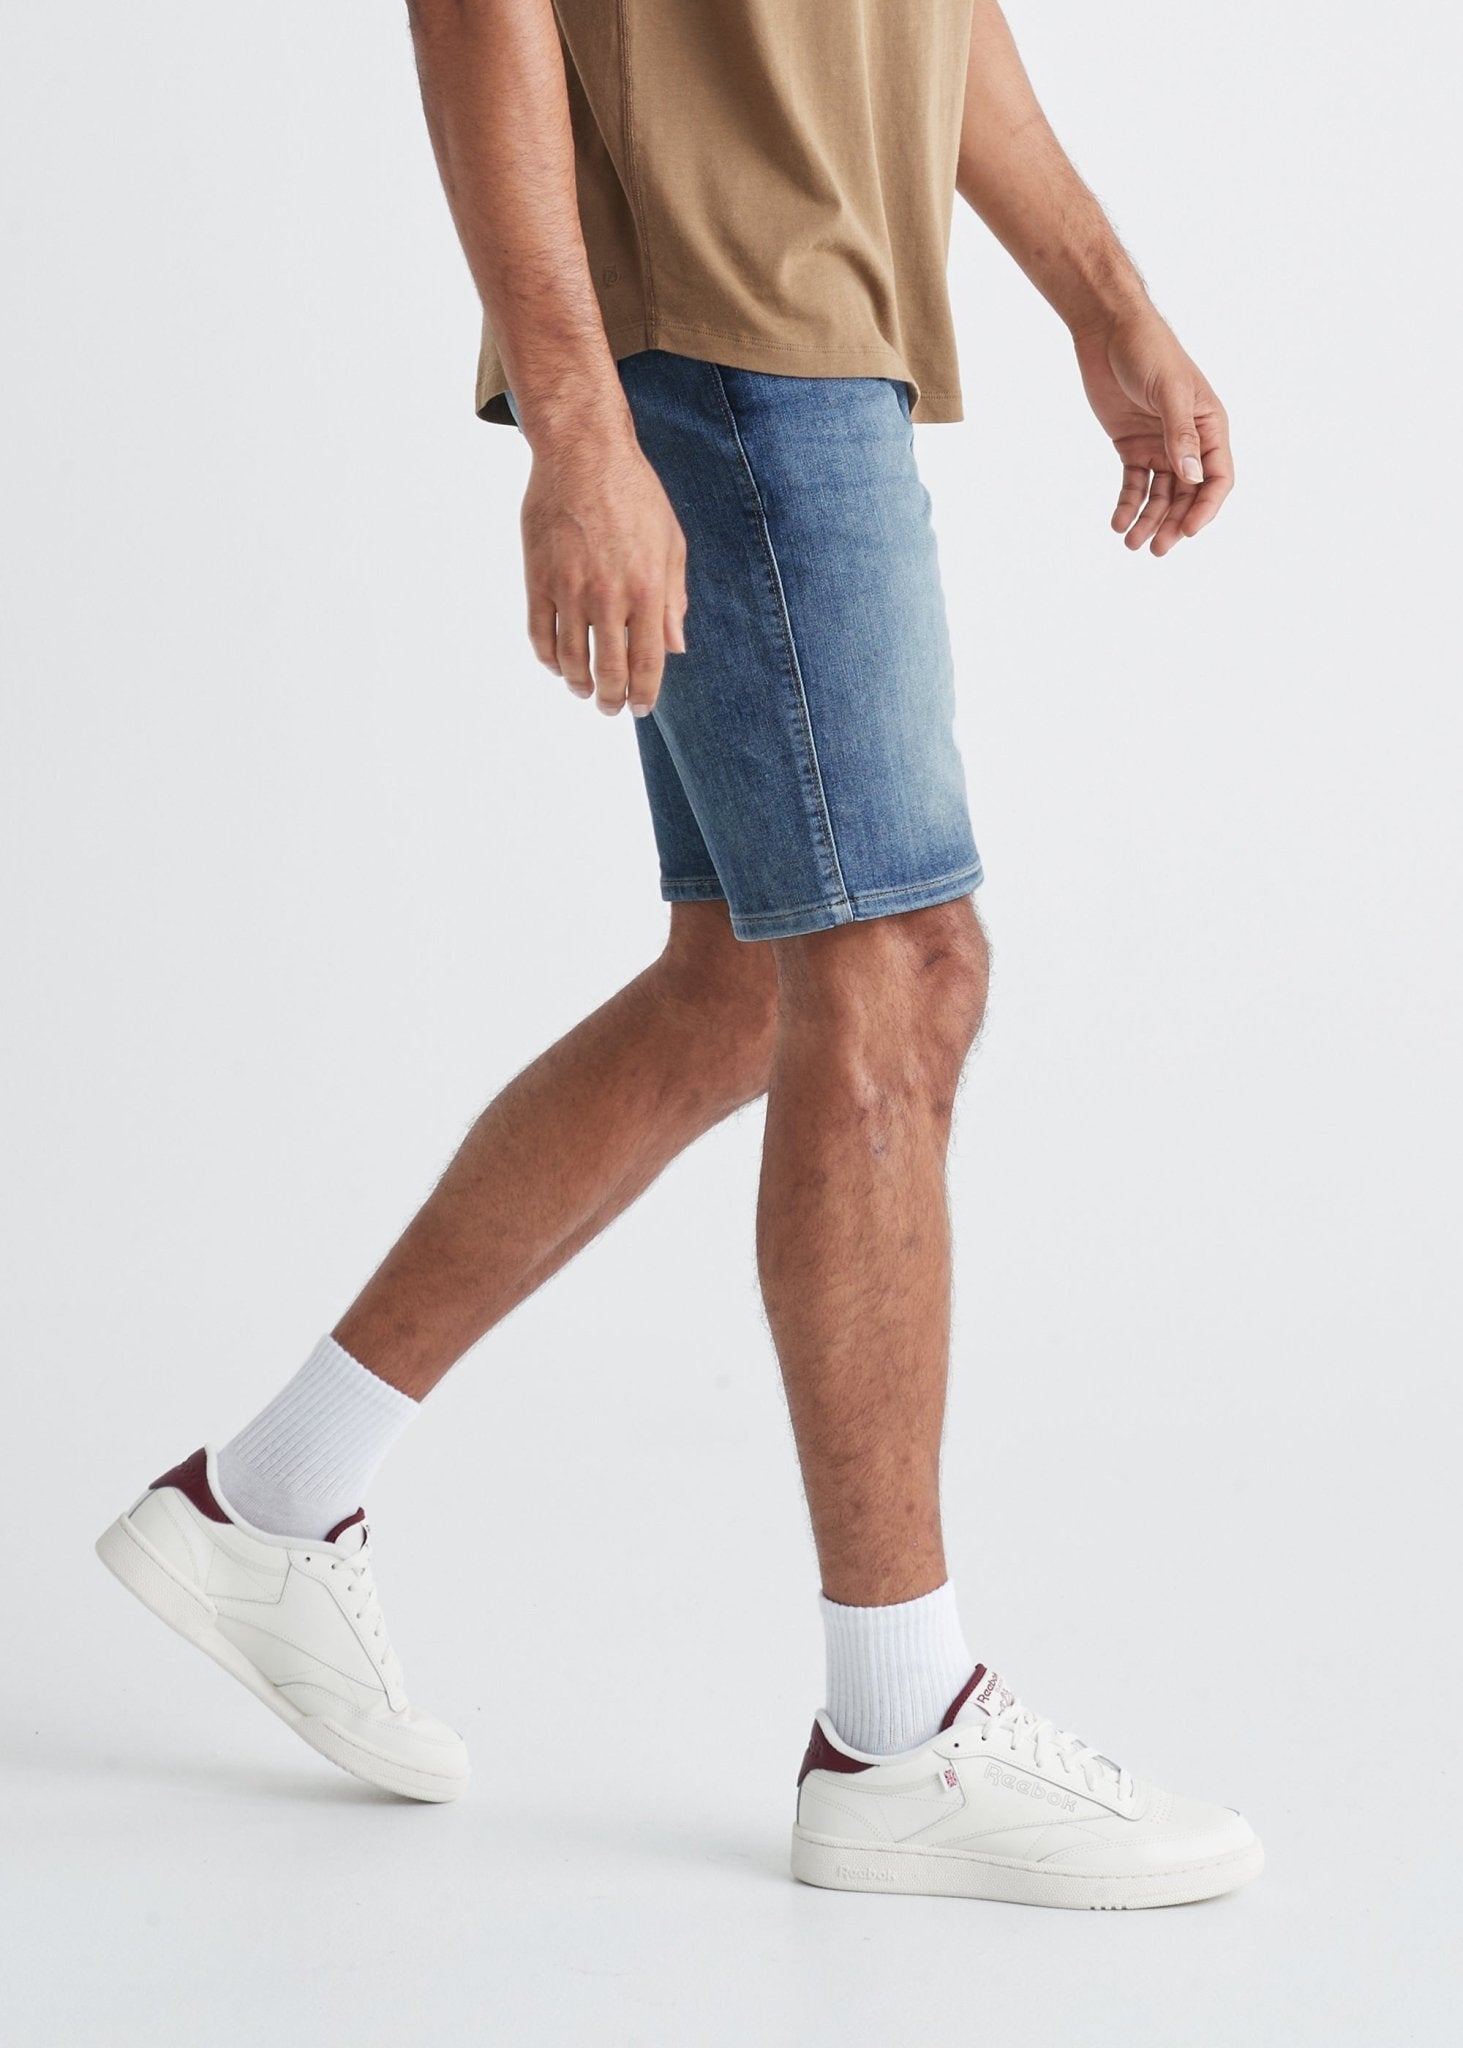 12 Short Skinny Denim Shorts For Men - THE JEANS BLOG